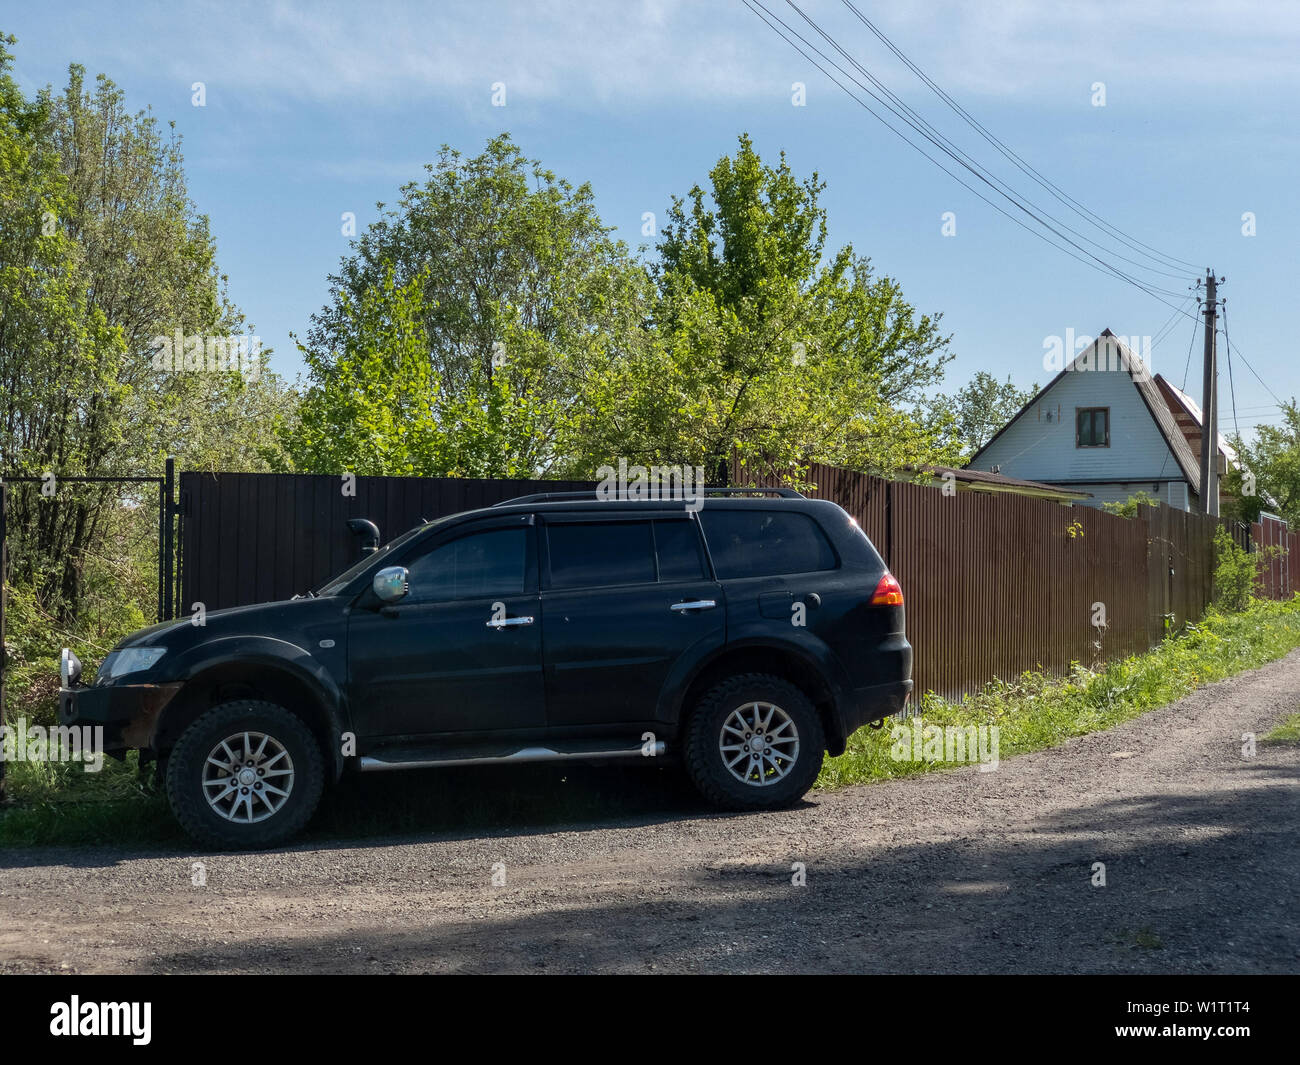 Moscou, Russie - 24 mai 2019 : Noir Mitsubishi Pajero Sport voiture garée près de la clôture d'une maison de campagne Banque D'Images